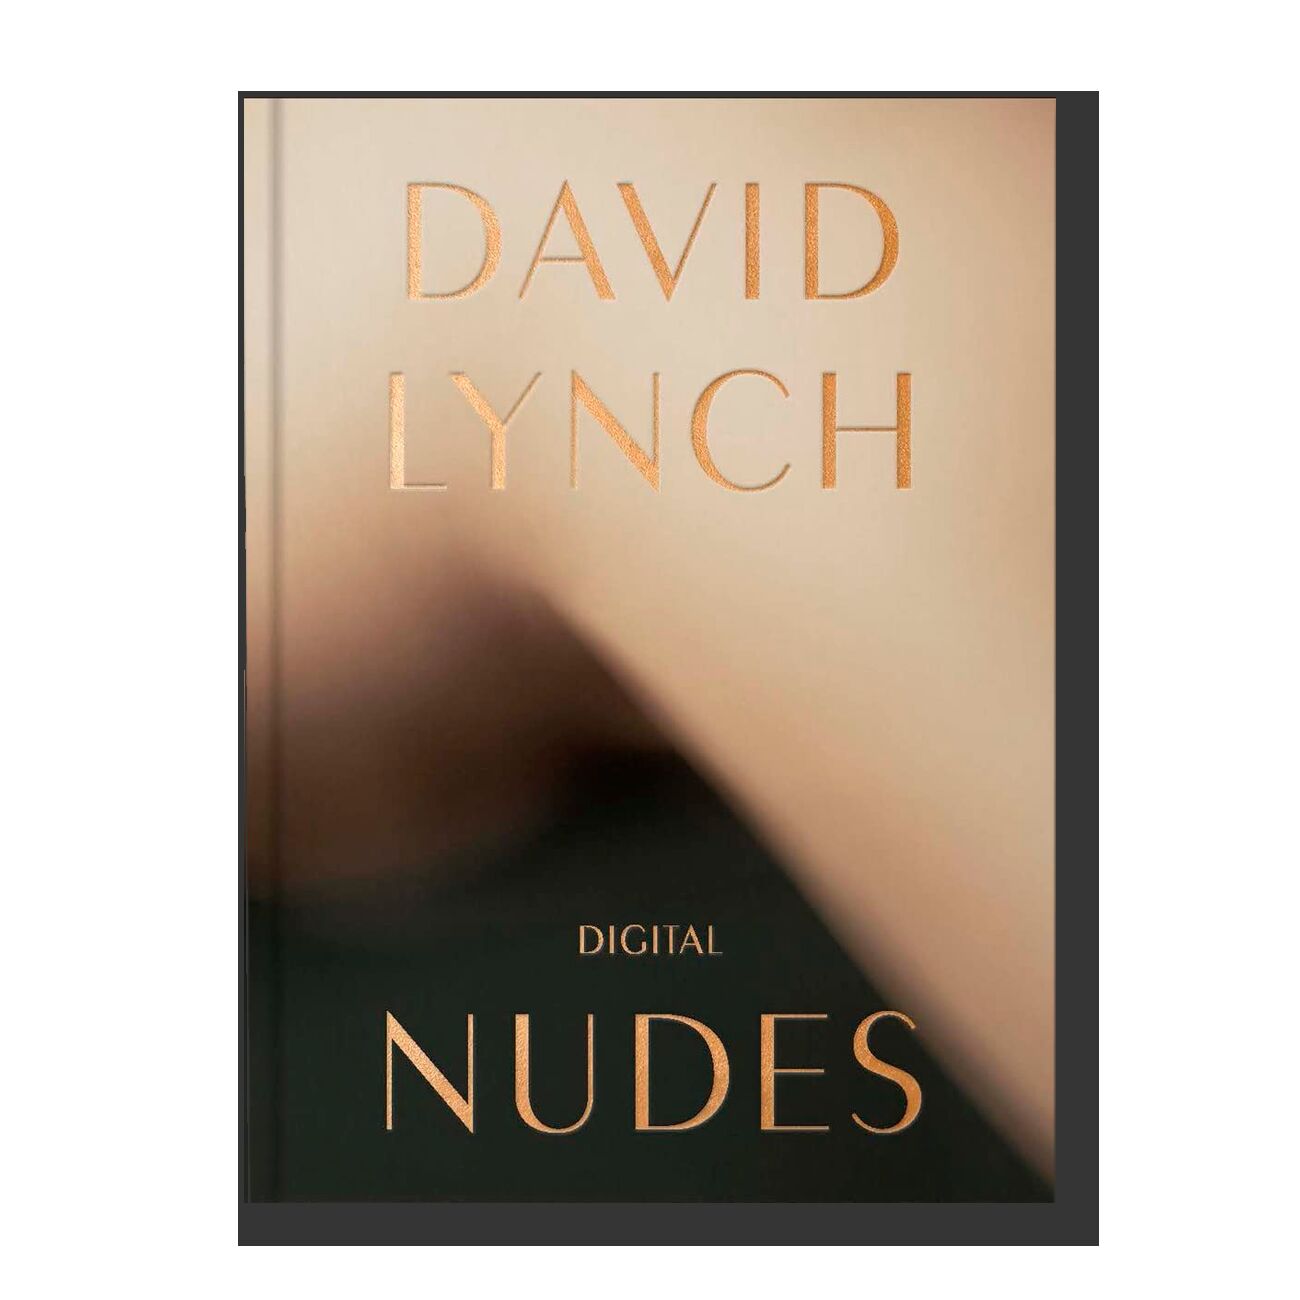 David Lynch, Digital Nudes